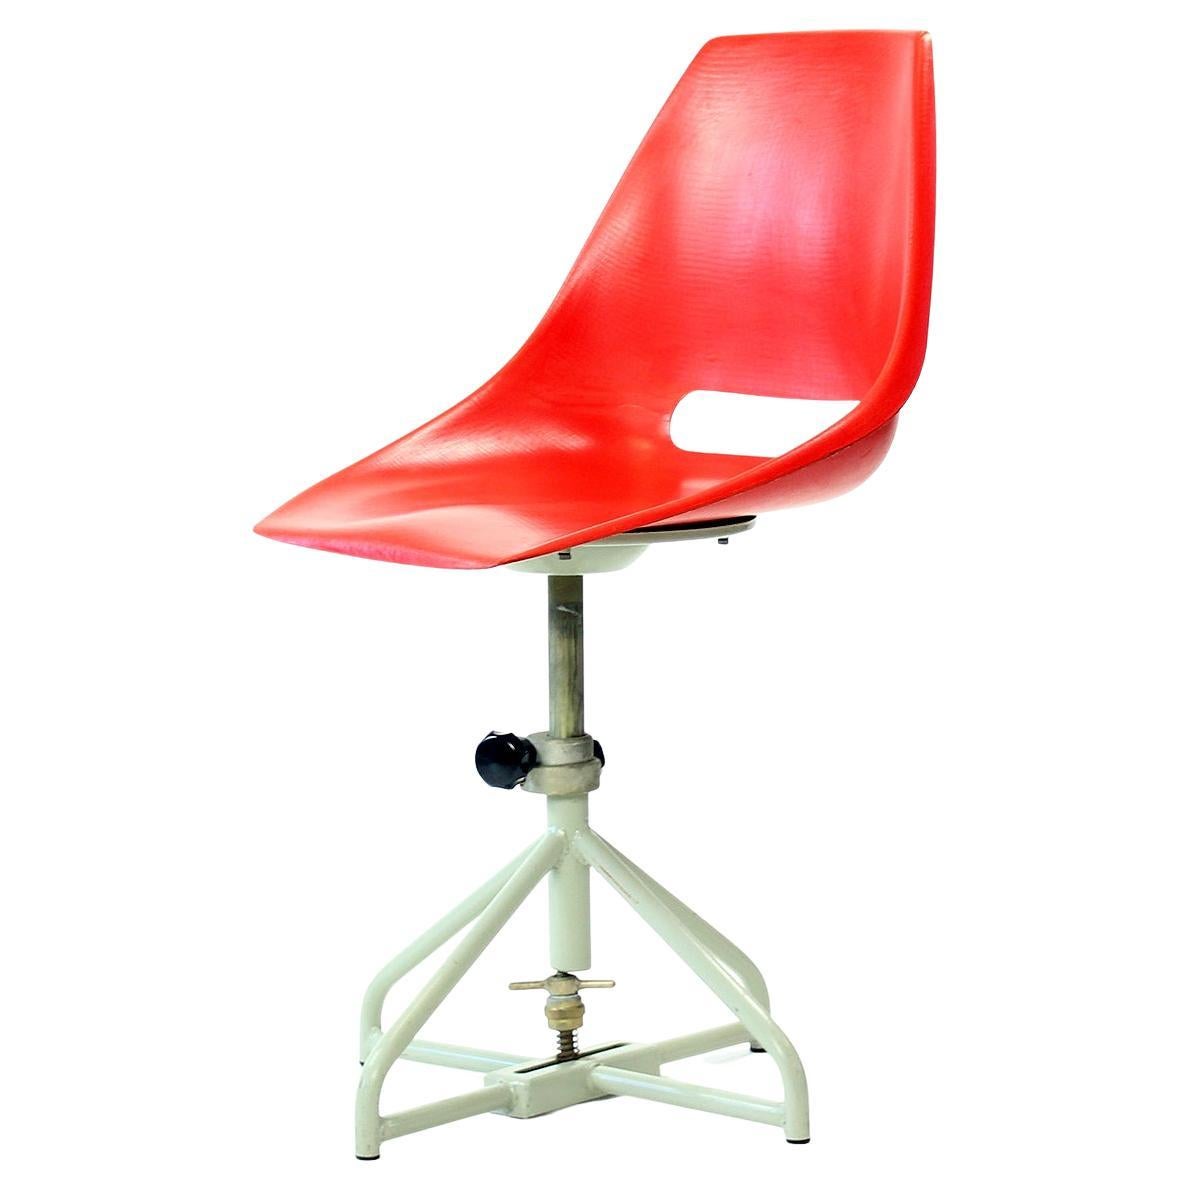 Red Tram Chair By Miroslav Navratil For Vertex, 1960s For Sale